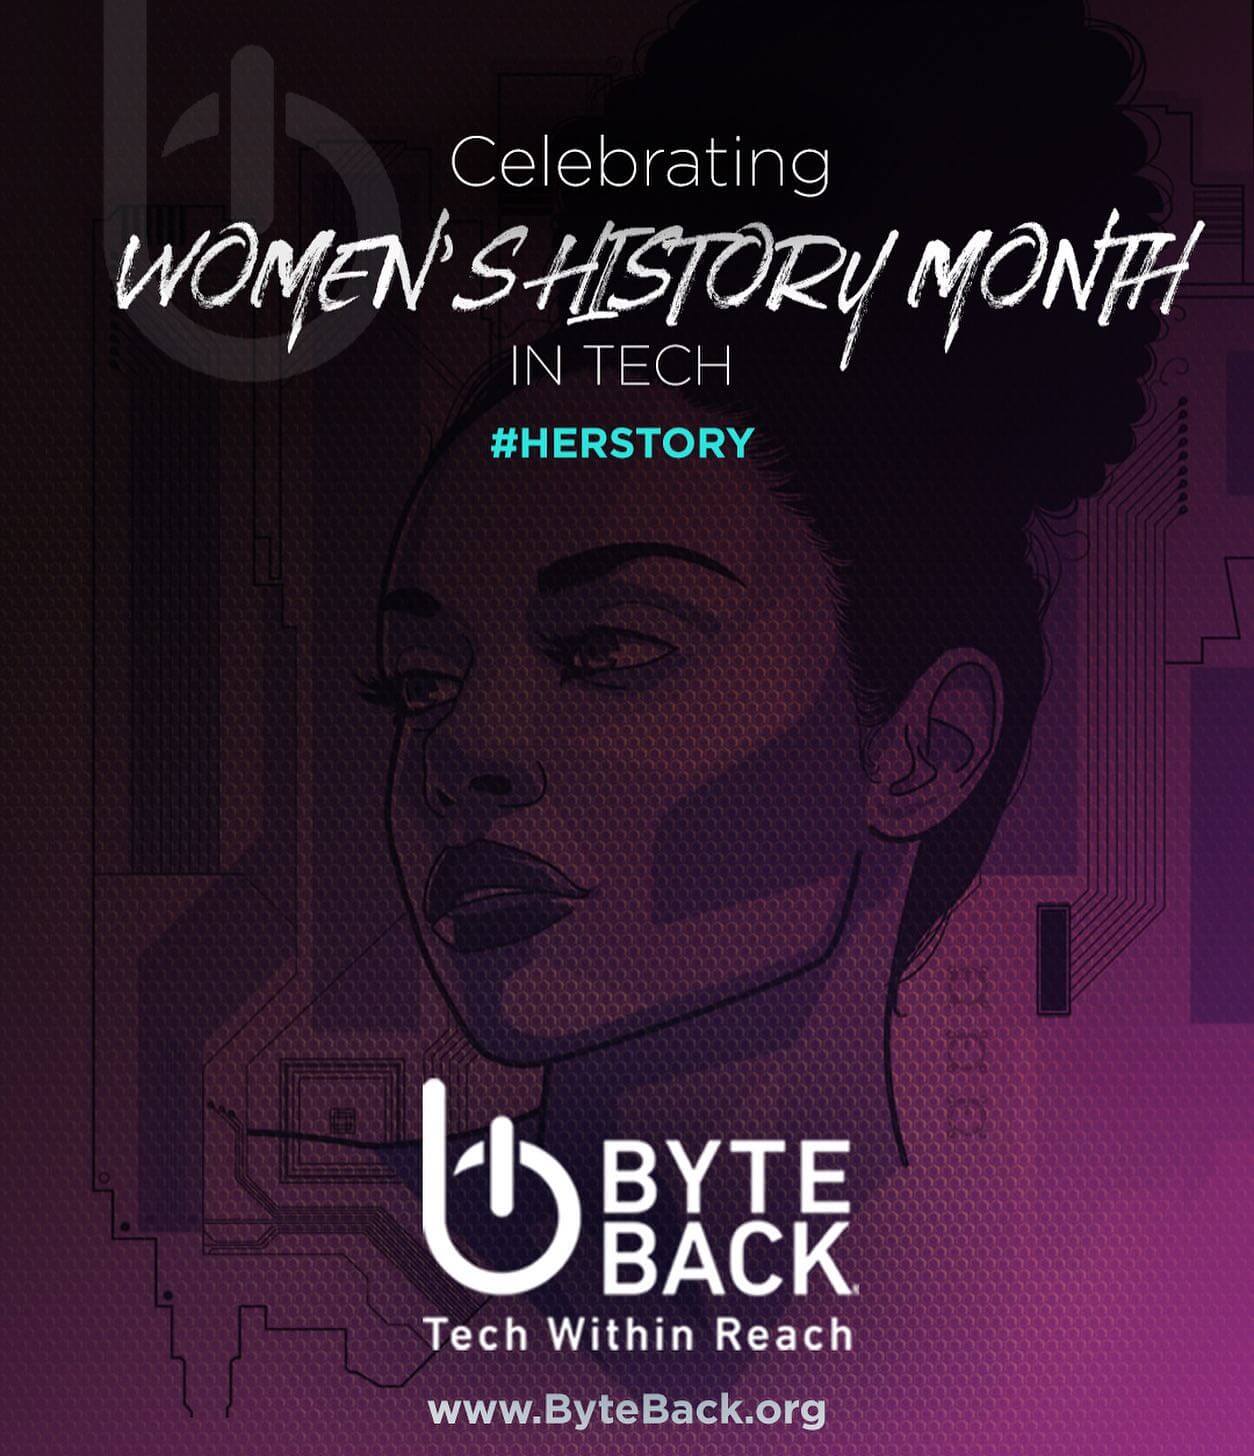 Byte Back Celebrates WOMEN IN TECH for March 2022